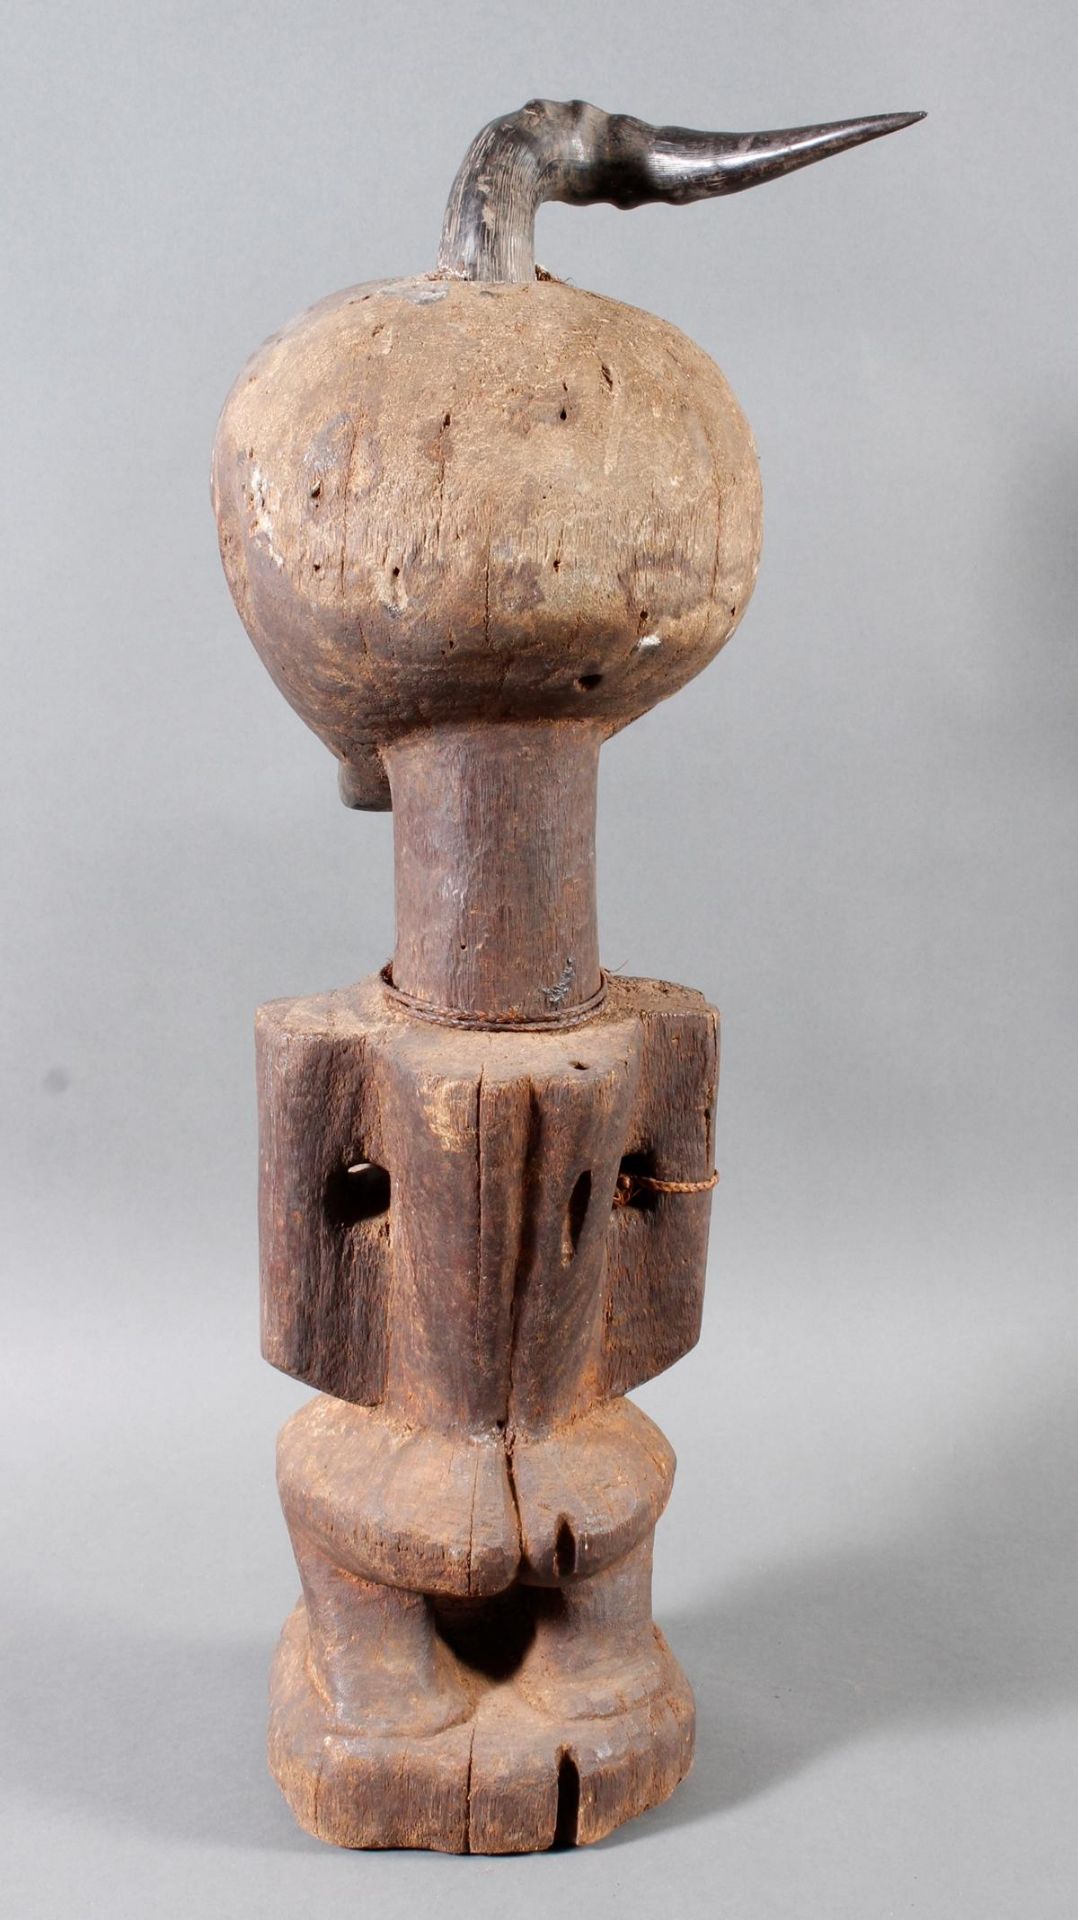 Große männliche Fetischfigur (nkisi) vom Stamm der Songye, D.R. Kongo - Bild 4 aus 9